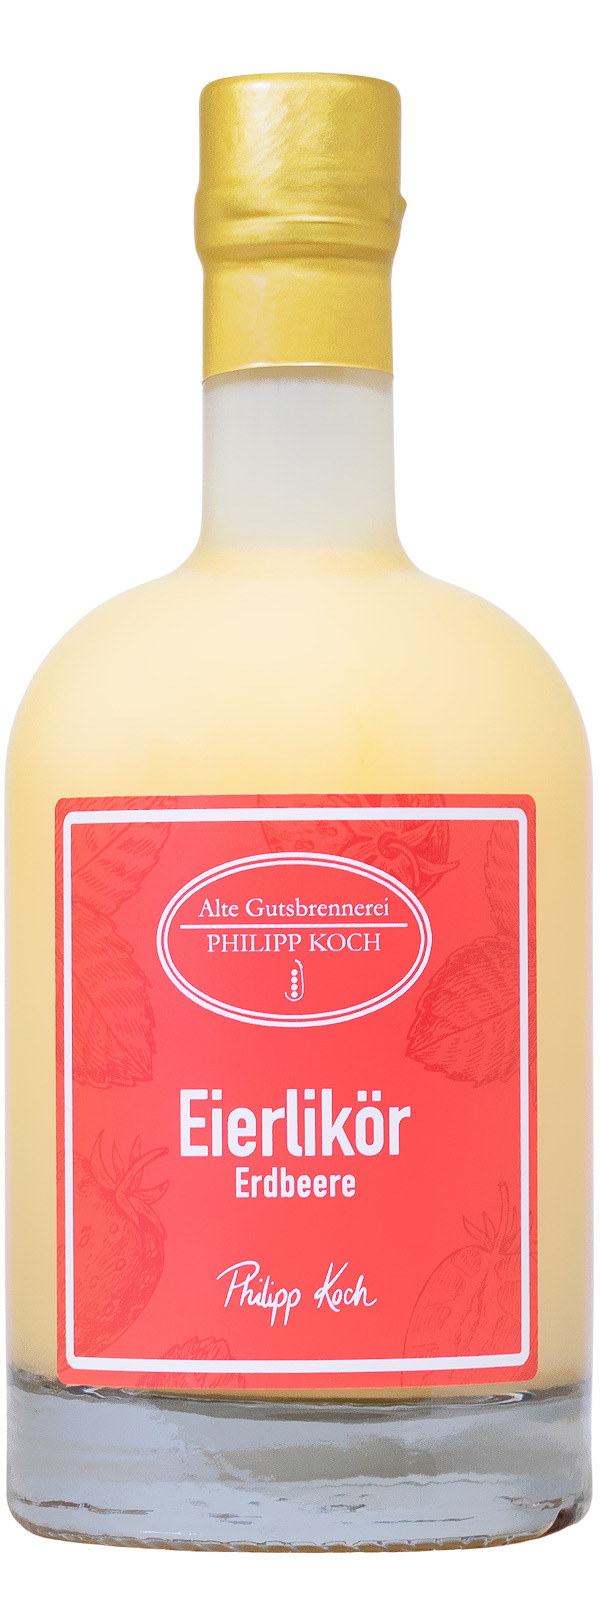 Alte Gutsbrennerei Philipp Koch Eierlikör Erdbeere - 0,5L 14% vol